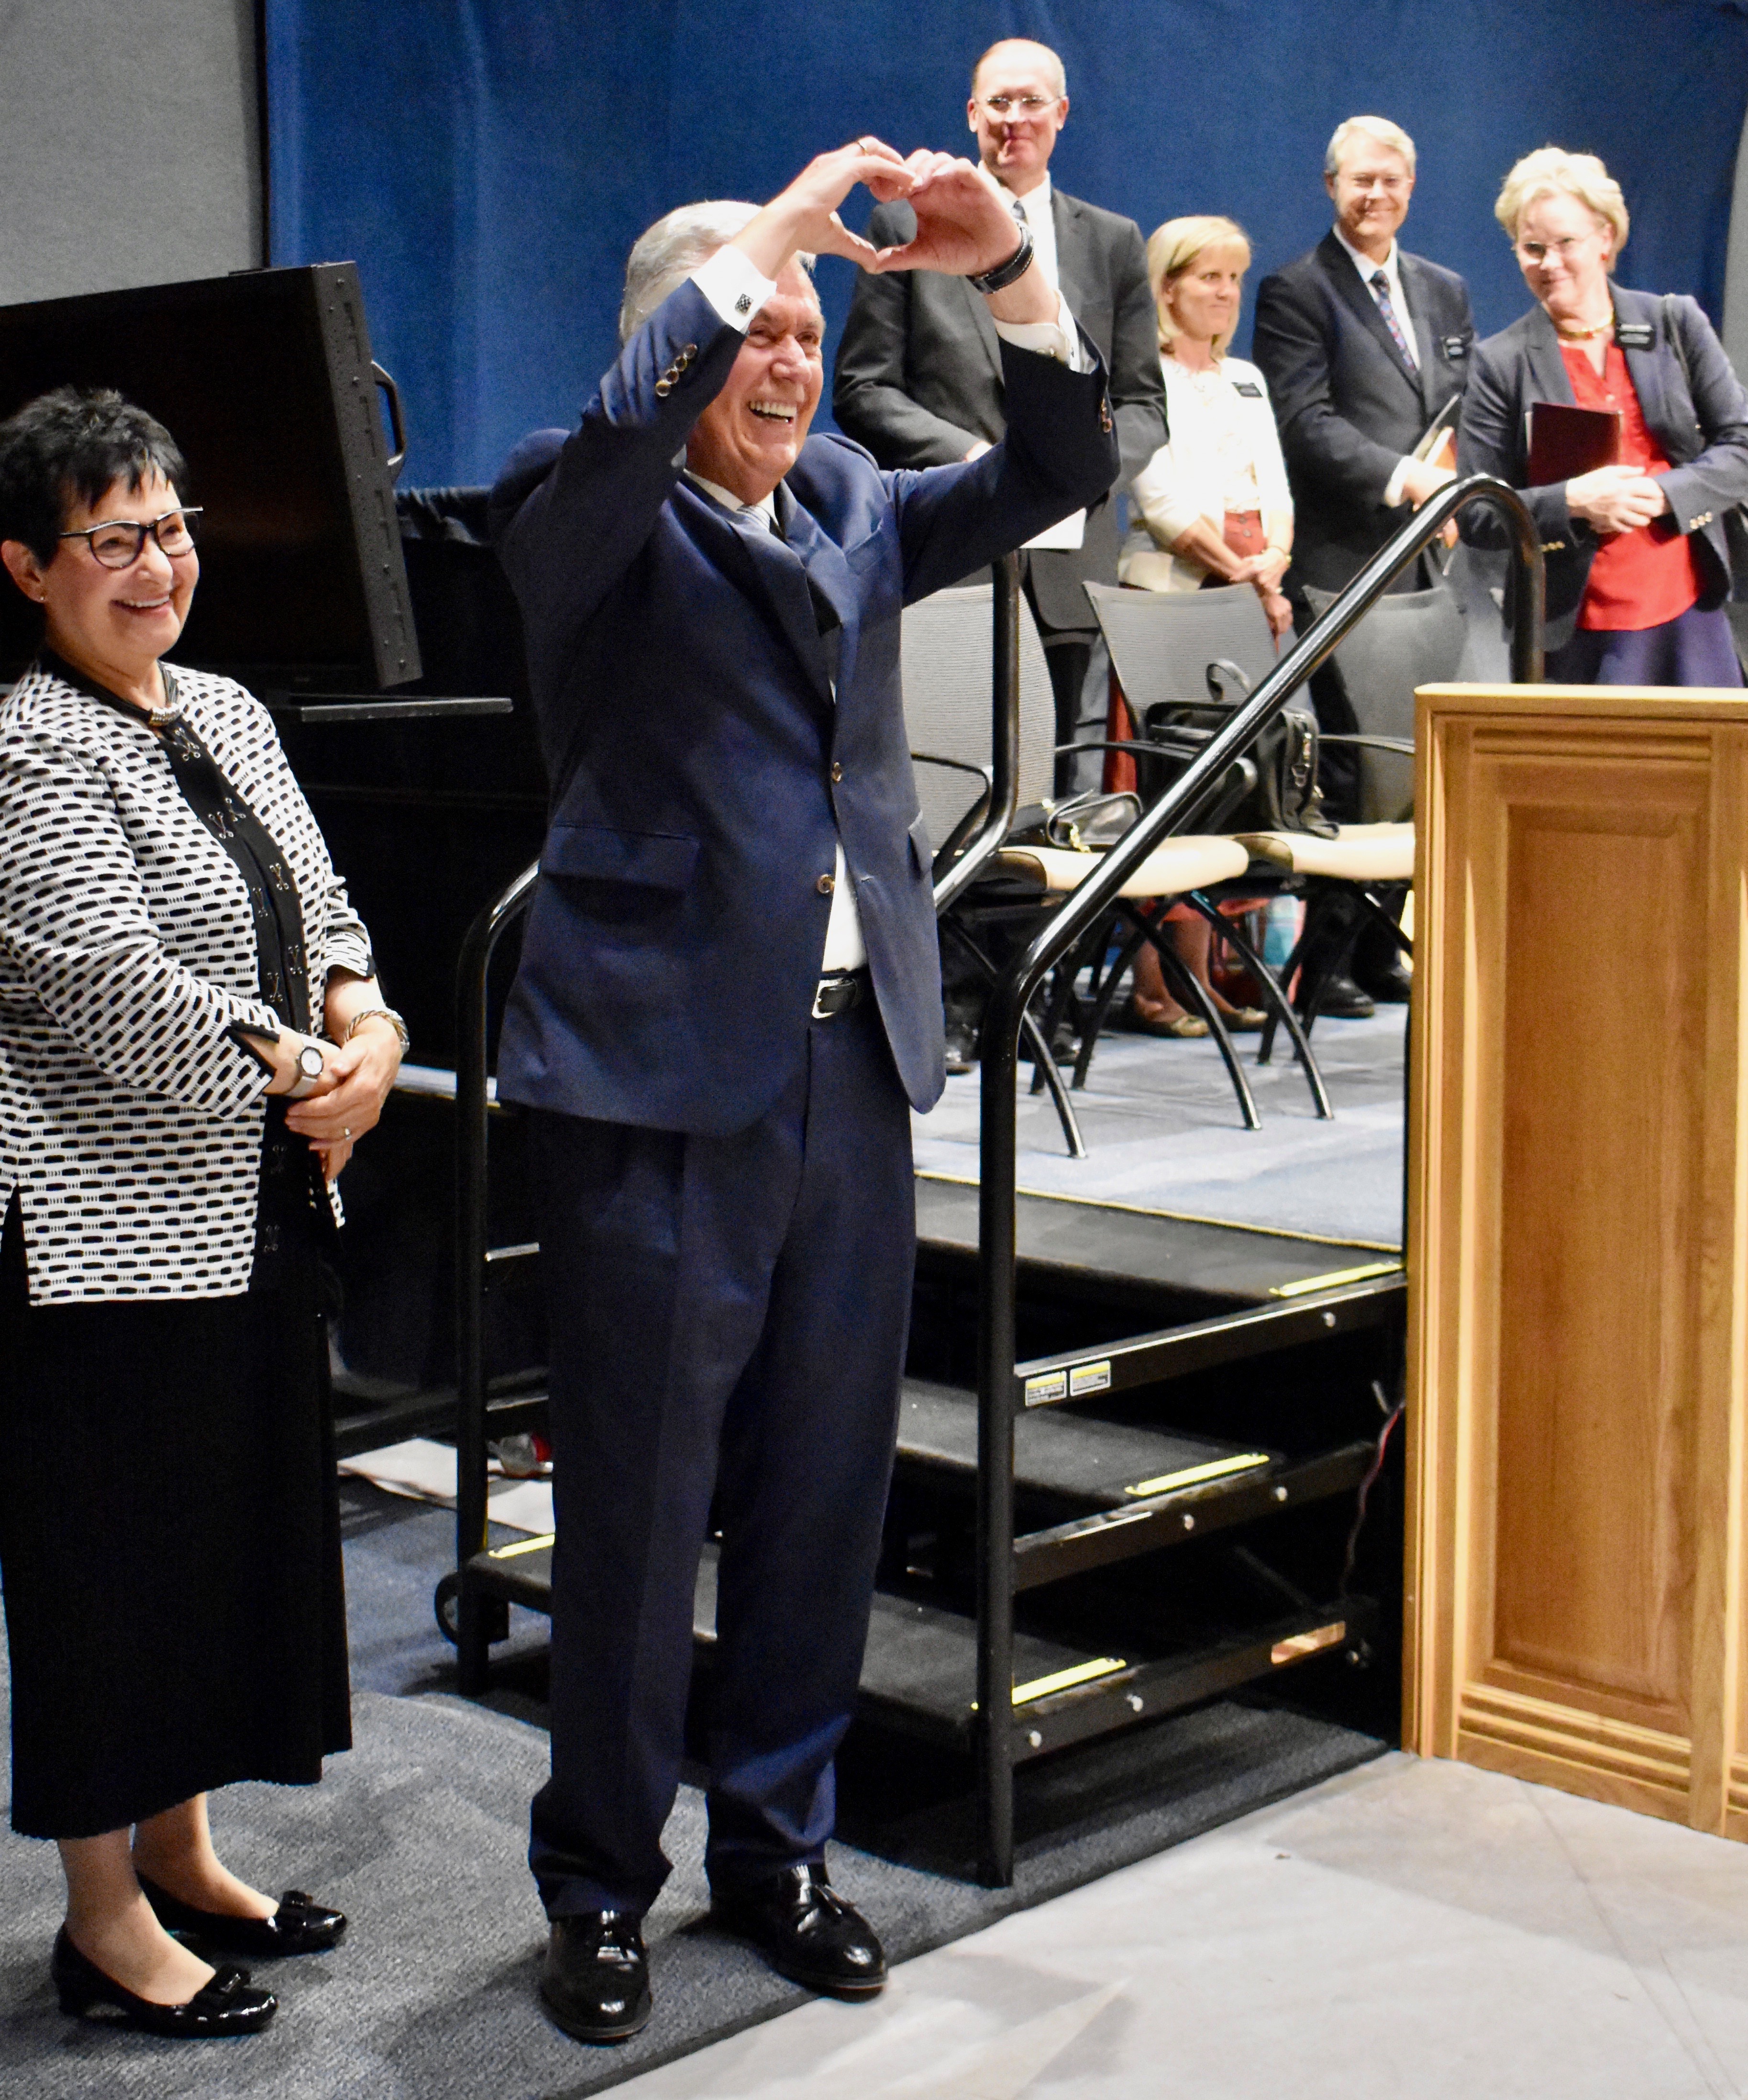 Usando sus manos para delinear la forma de un corazón, el élder Dieter F. Uchtdorf muestra su amor por los misioneros después de un devocional del 5 de noviembre de 2019 en el Centro de Capacitación Misional de Provo.